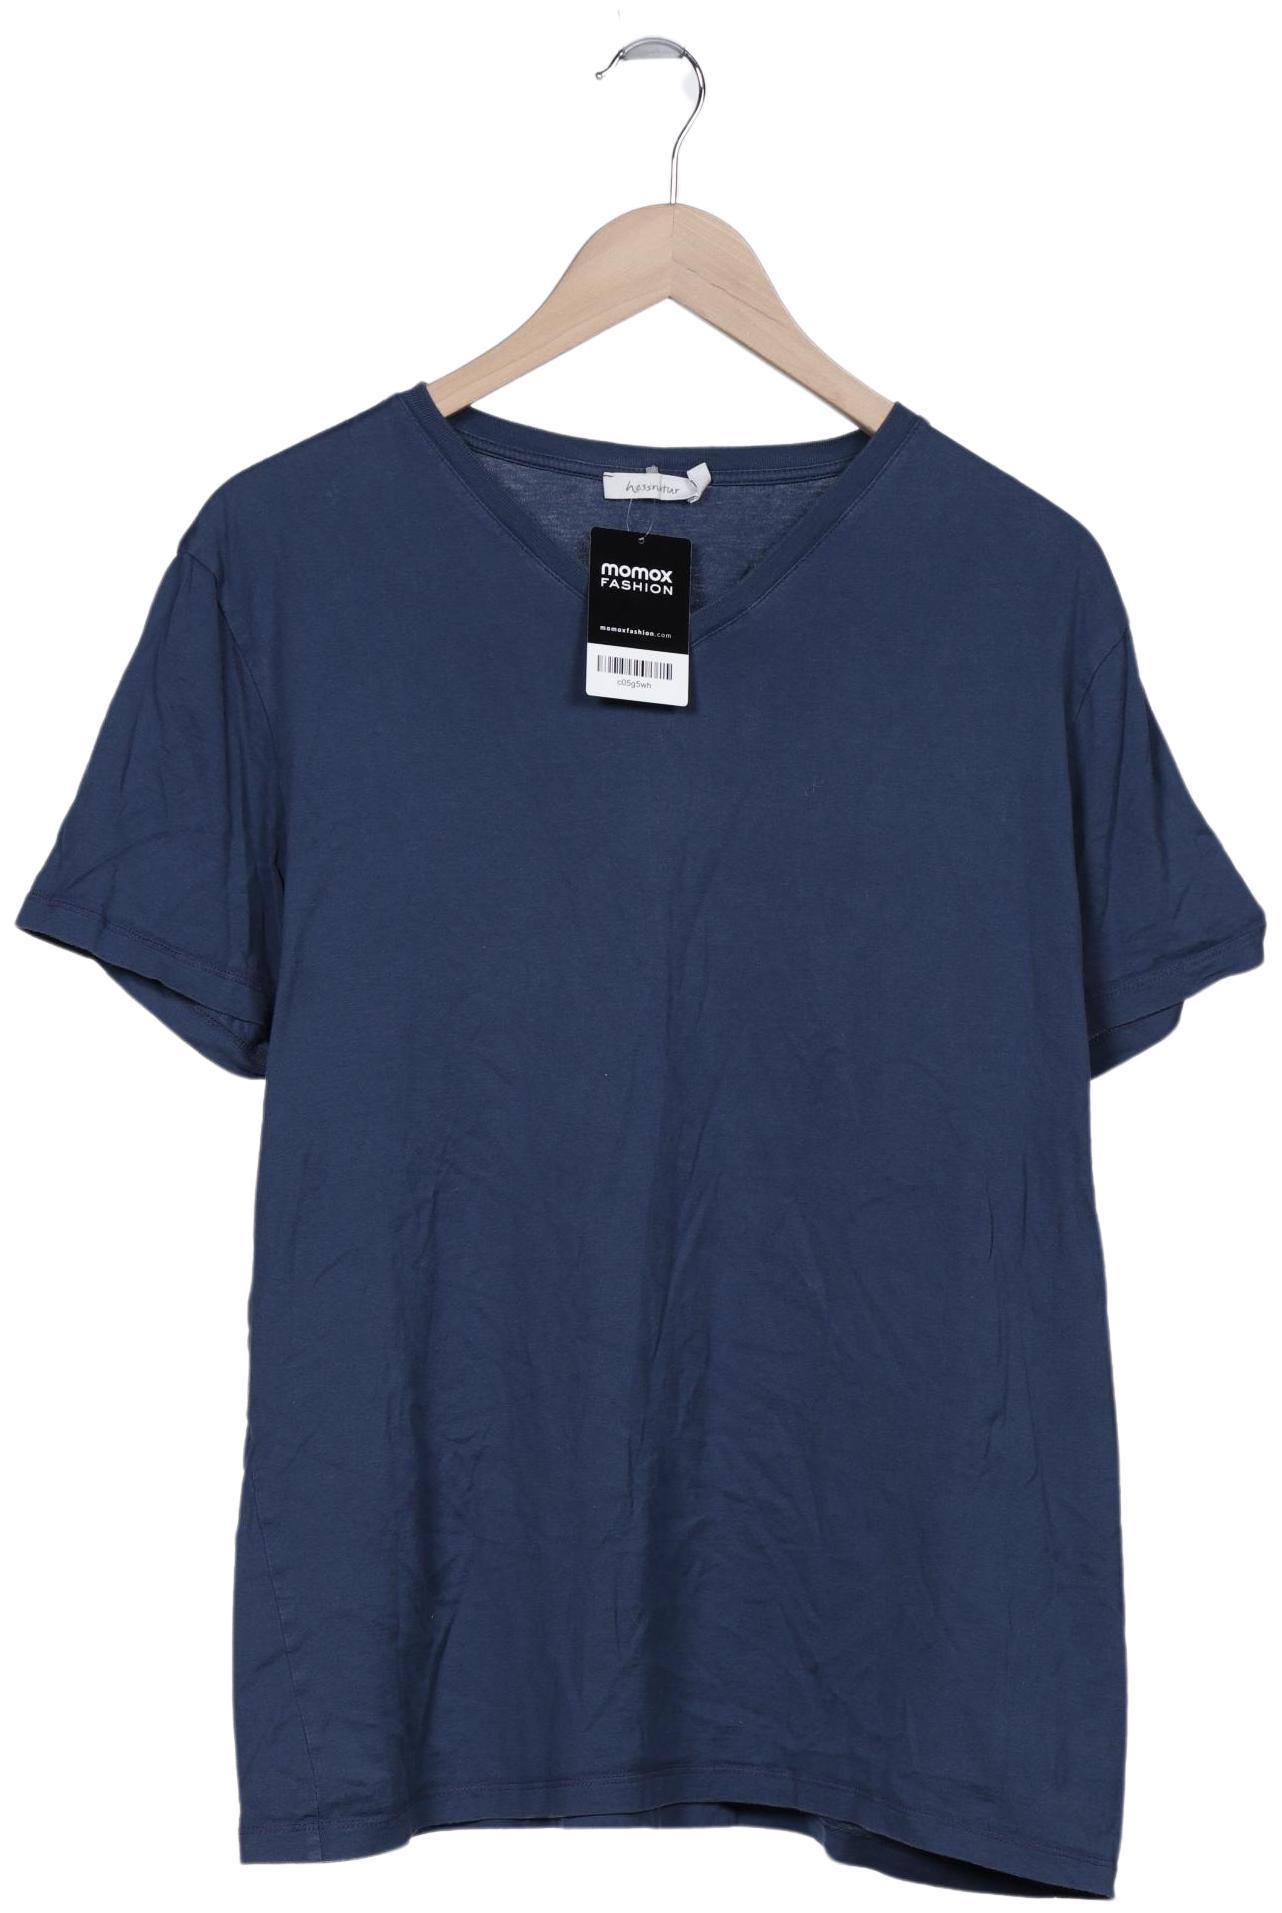 hessnatur Herren T-Shirt, marineblau, Gr. 54 von hessnatur